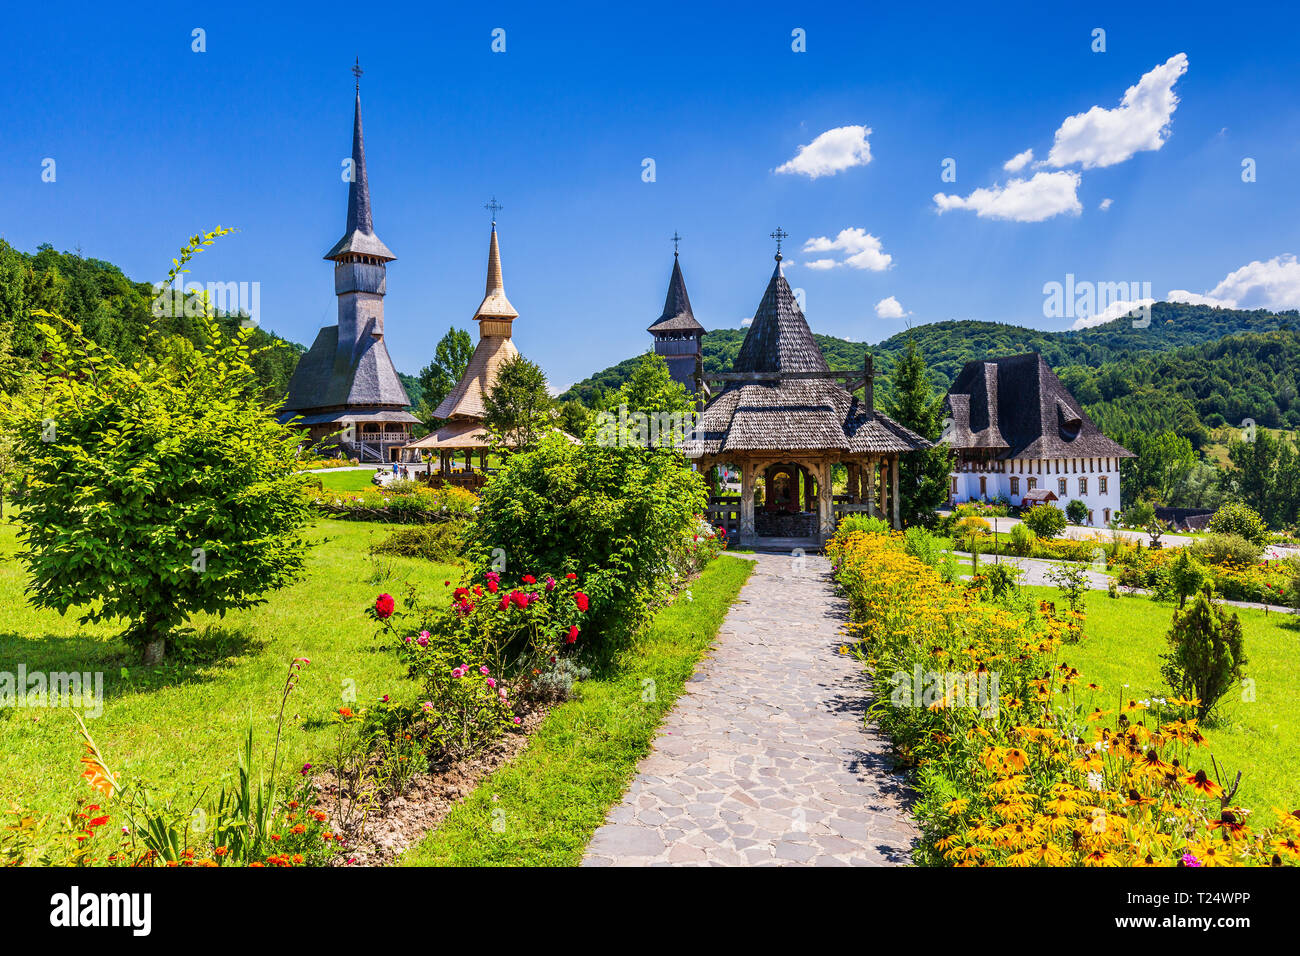 Barsana, Roumanie. Églises en bois au Monastère Barsana. La région de Maramures. Banque D'Images